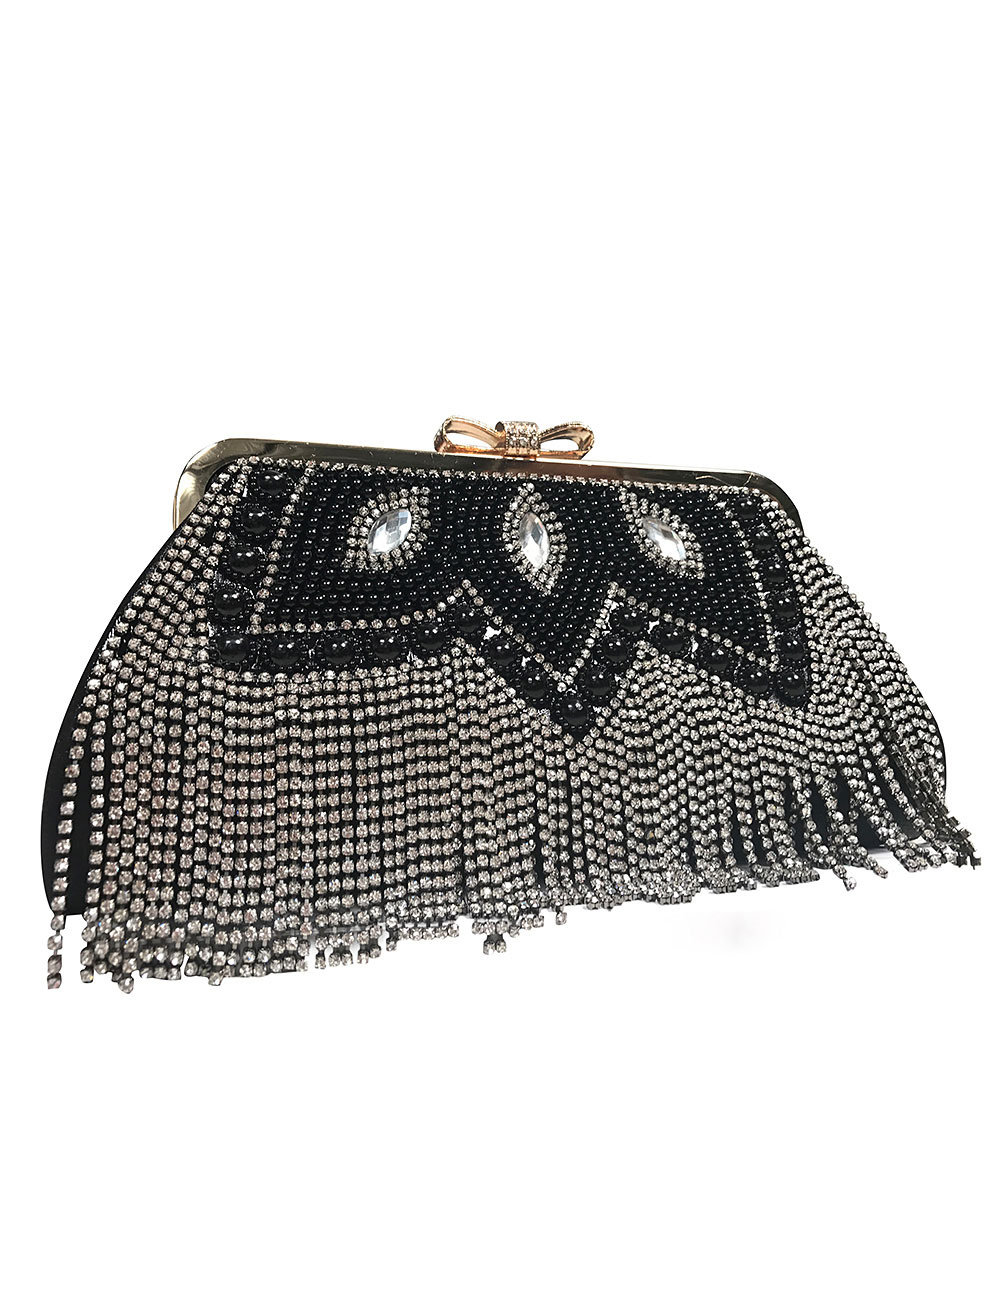 Vintage Wedding Clutches Black Fringe Party Handbags Beading Rhinestone ...